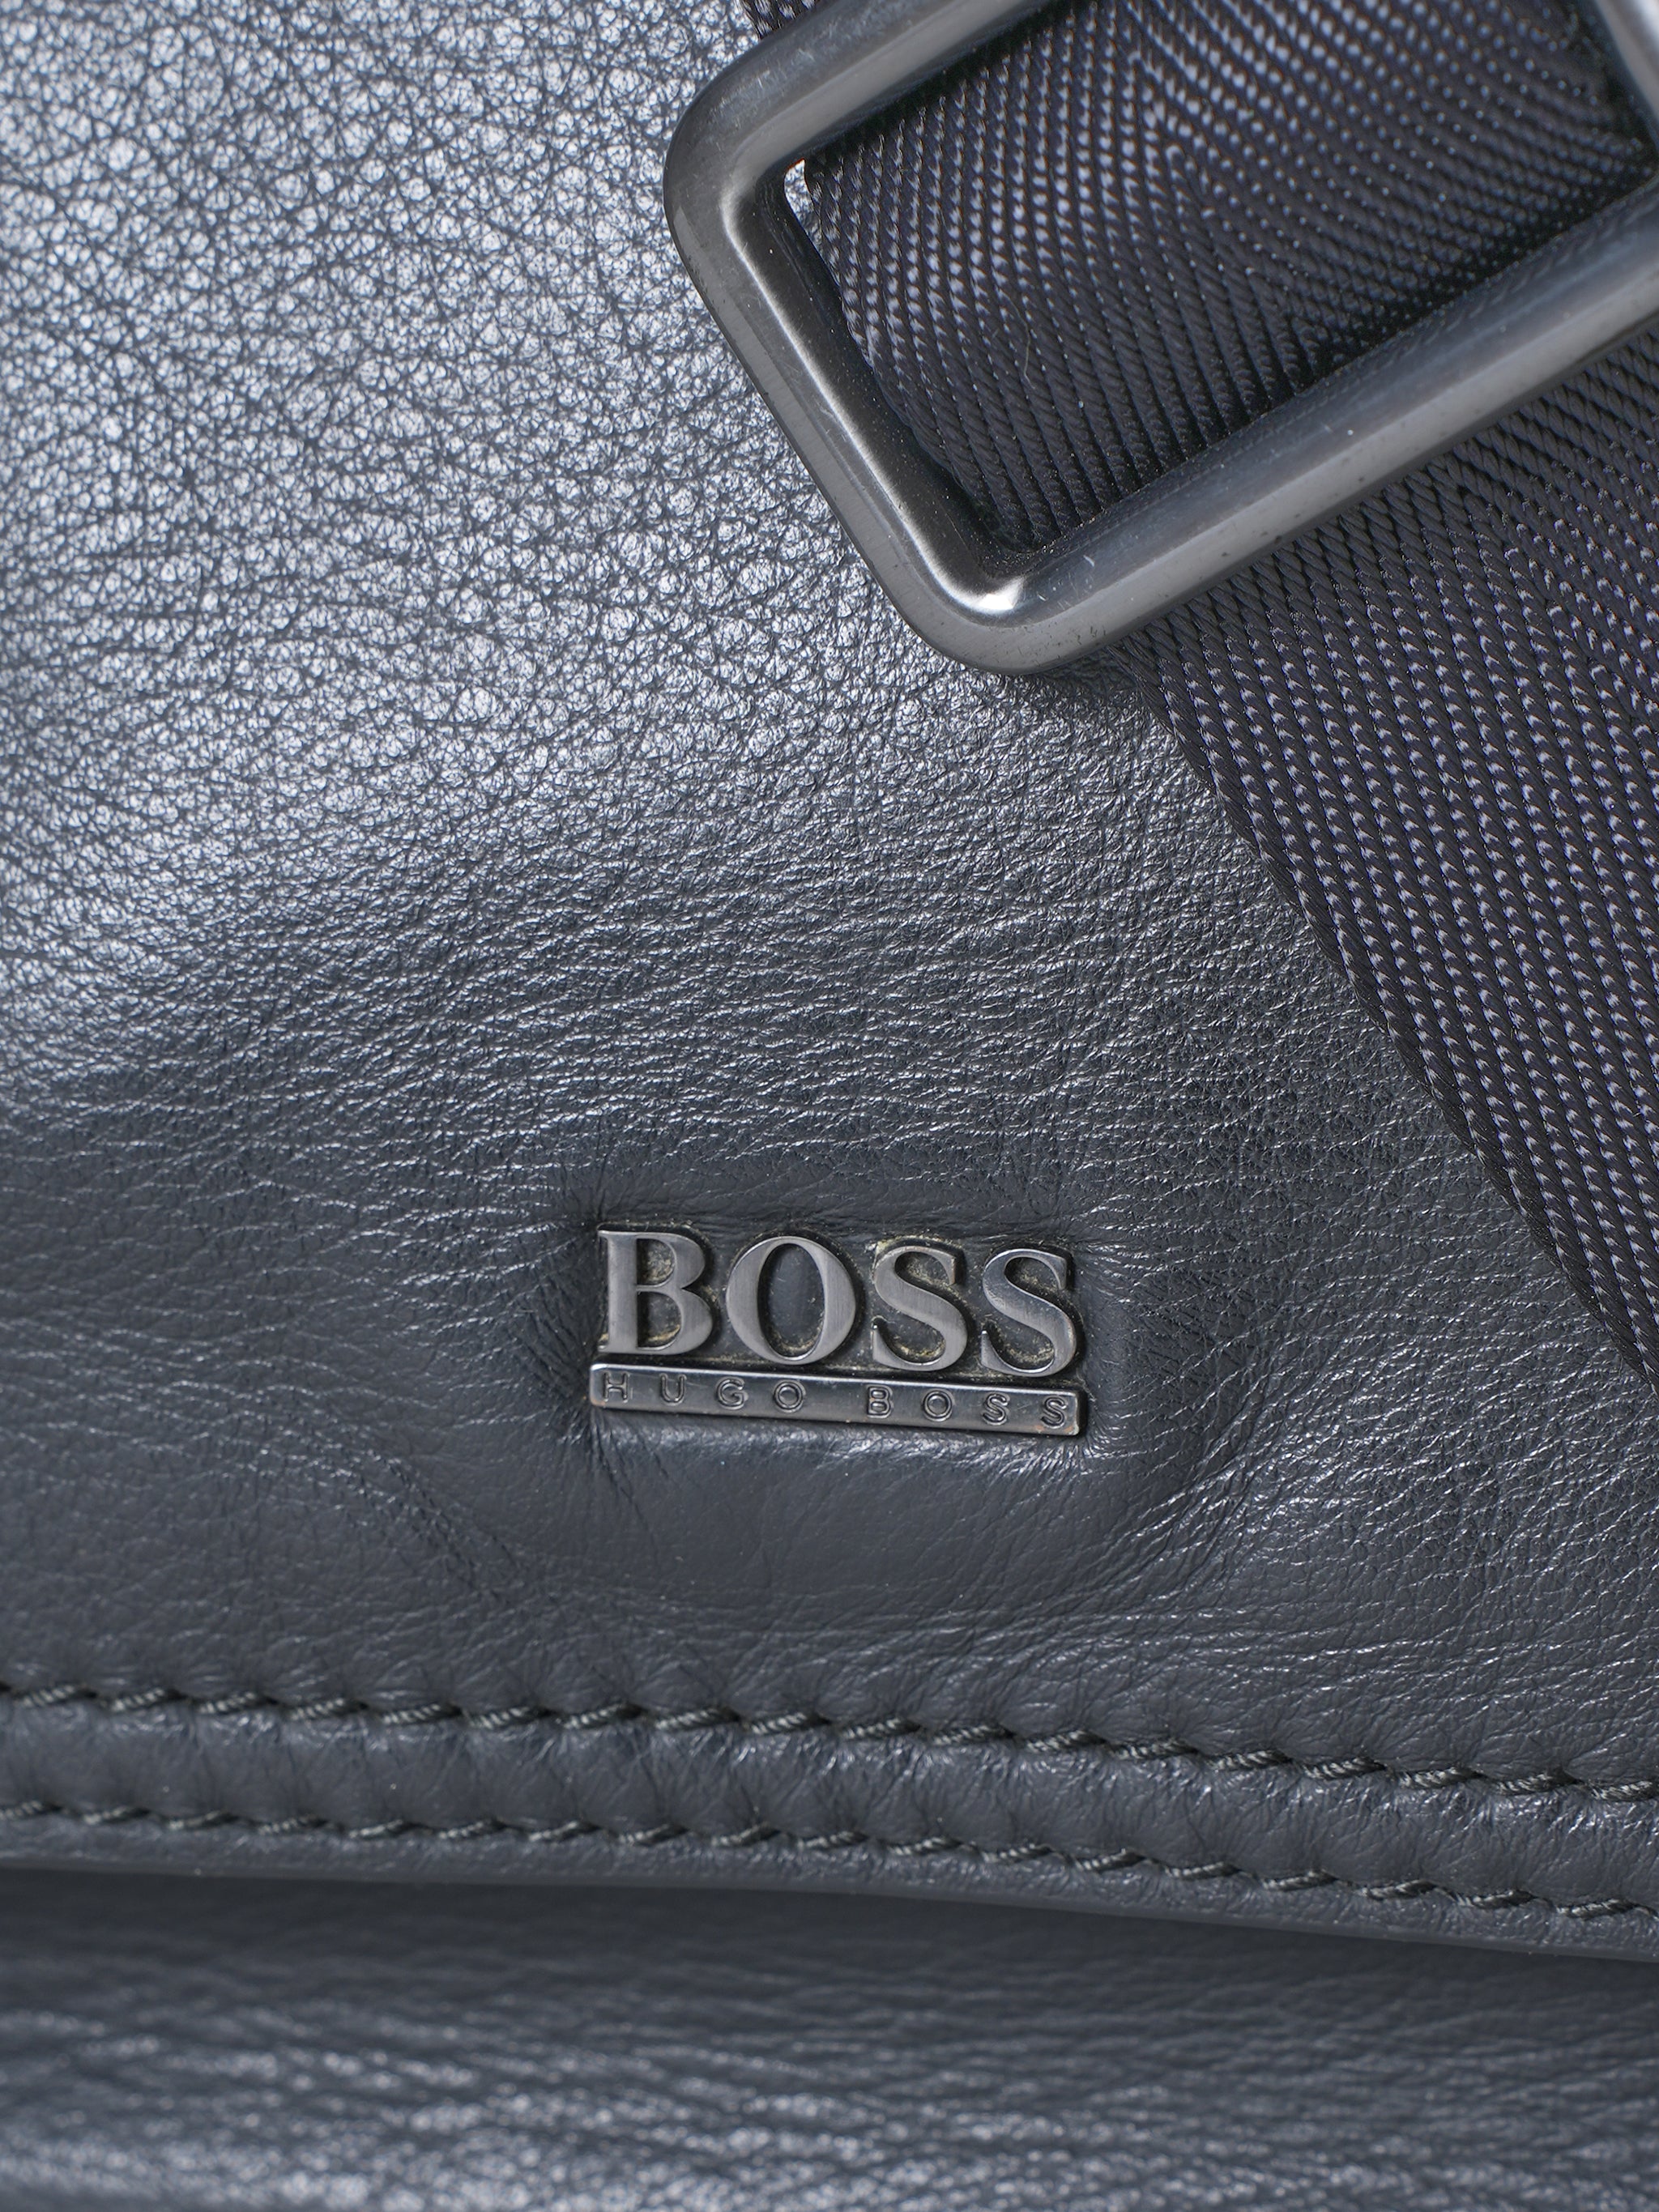 Hugo Boss Black Cross Body Bag